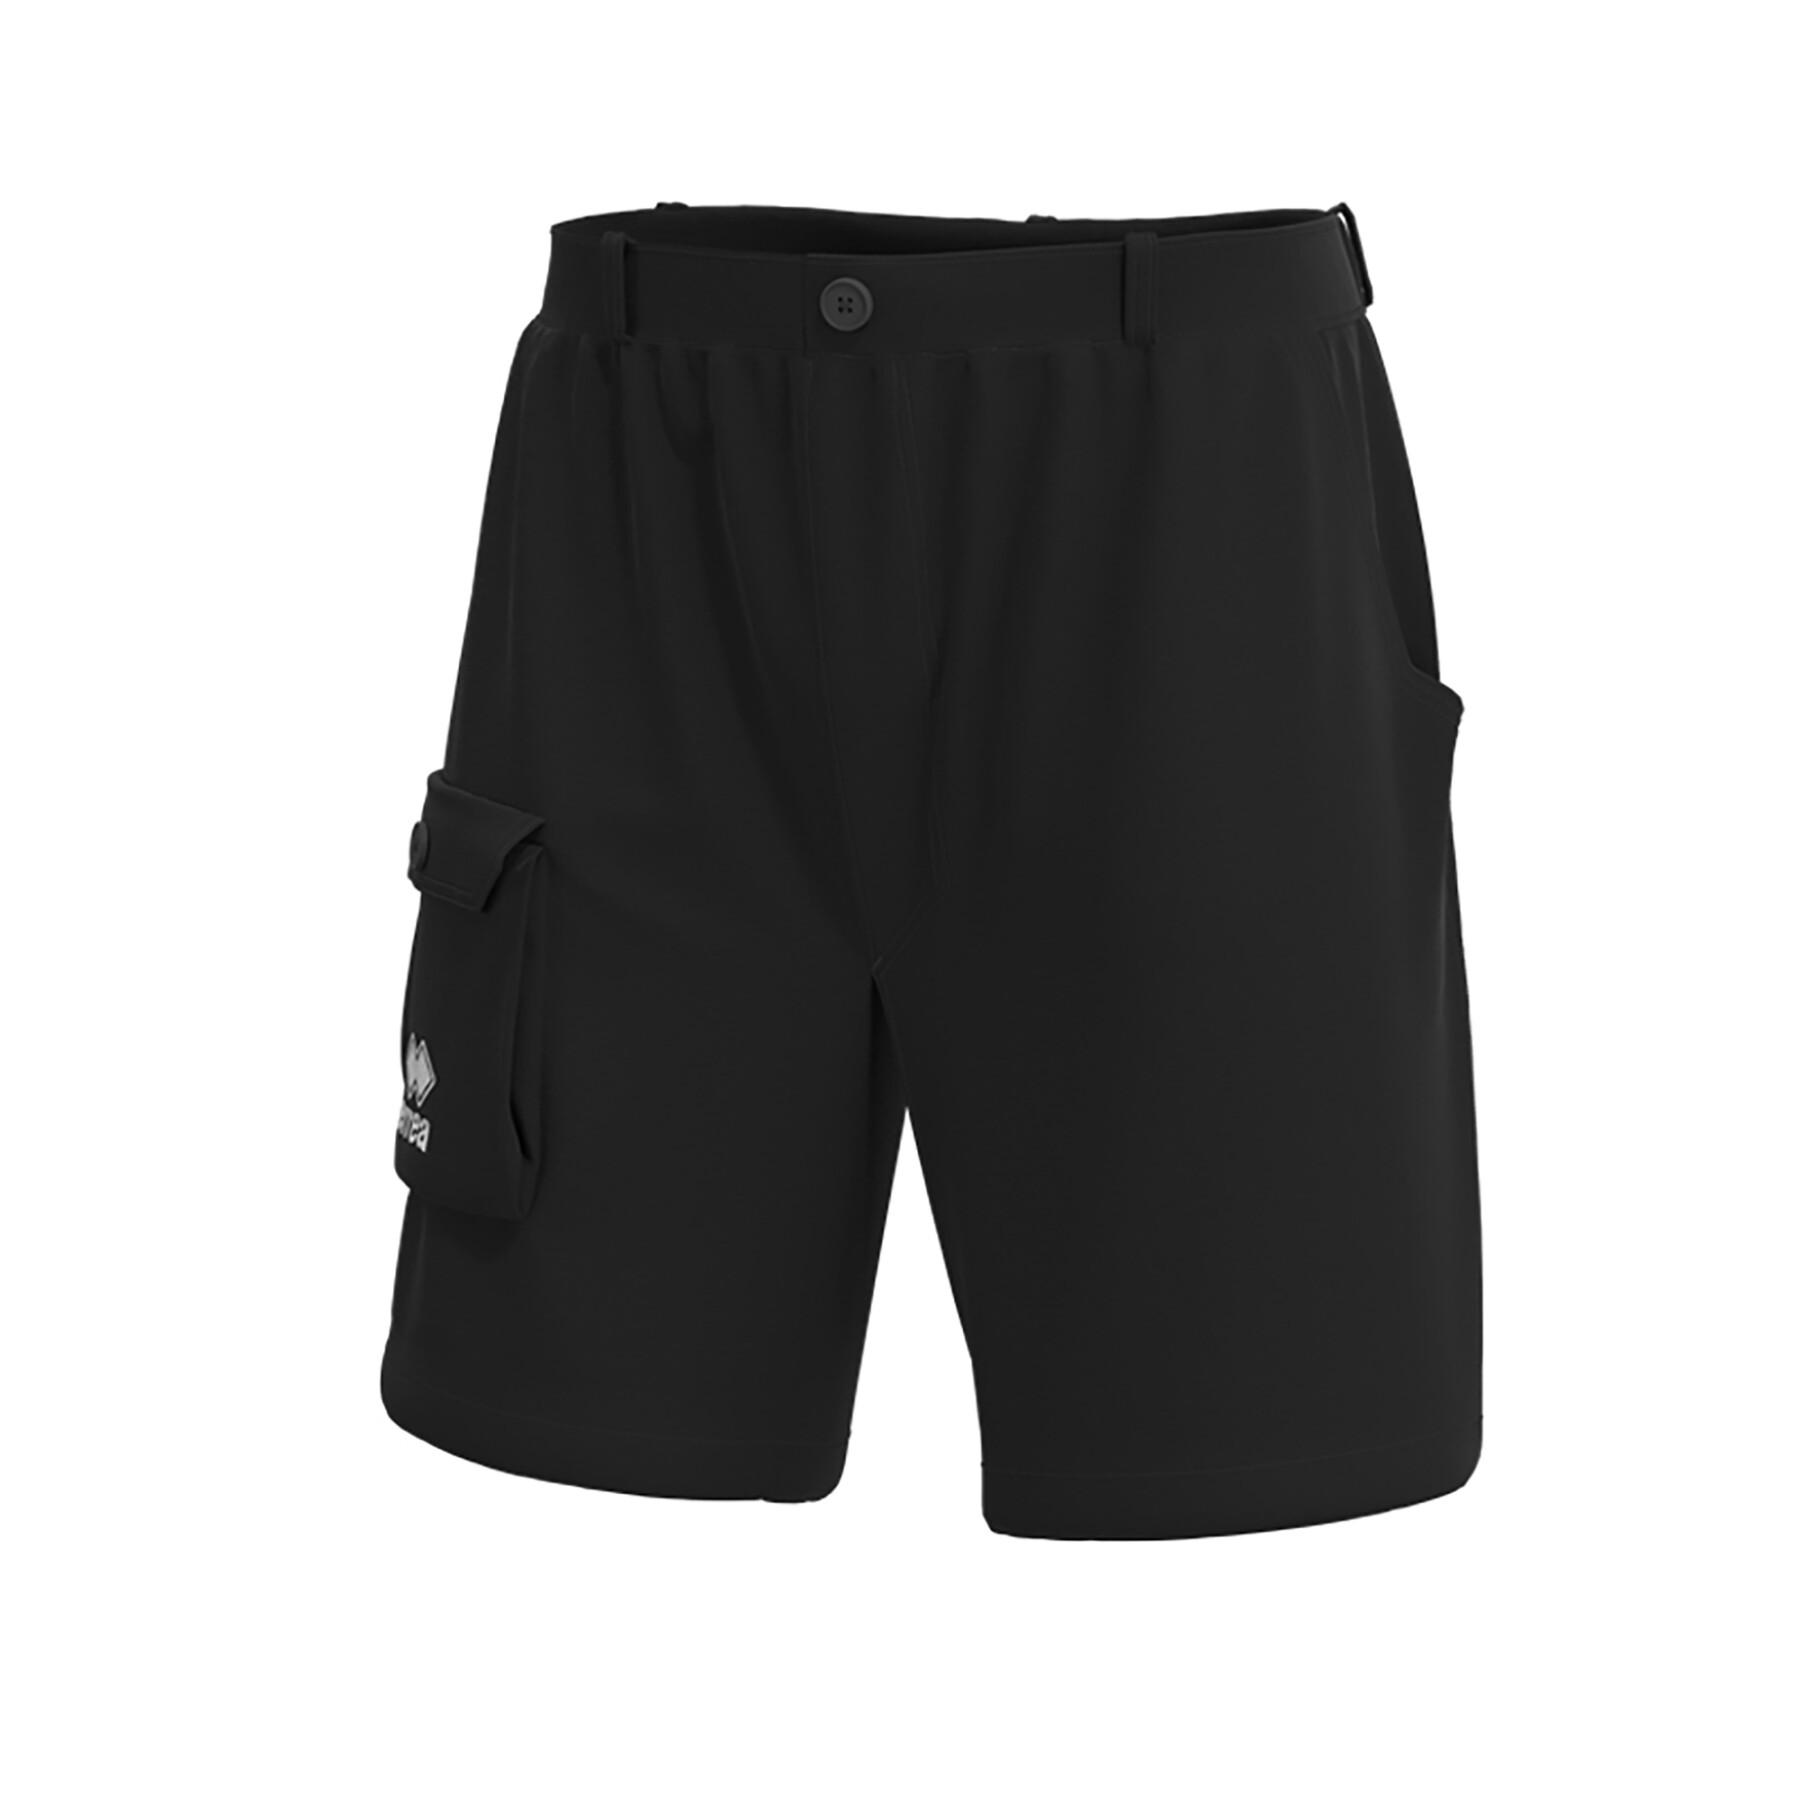 Bermuda shorts Errea Luca